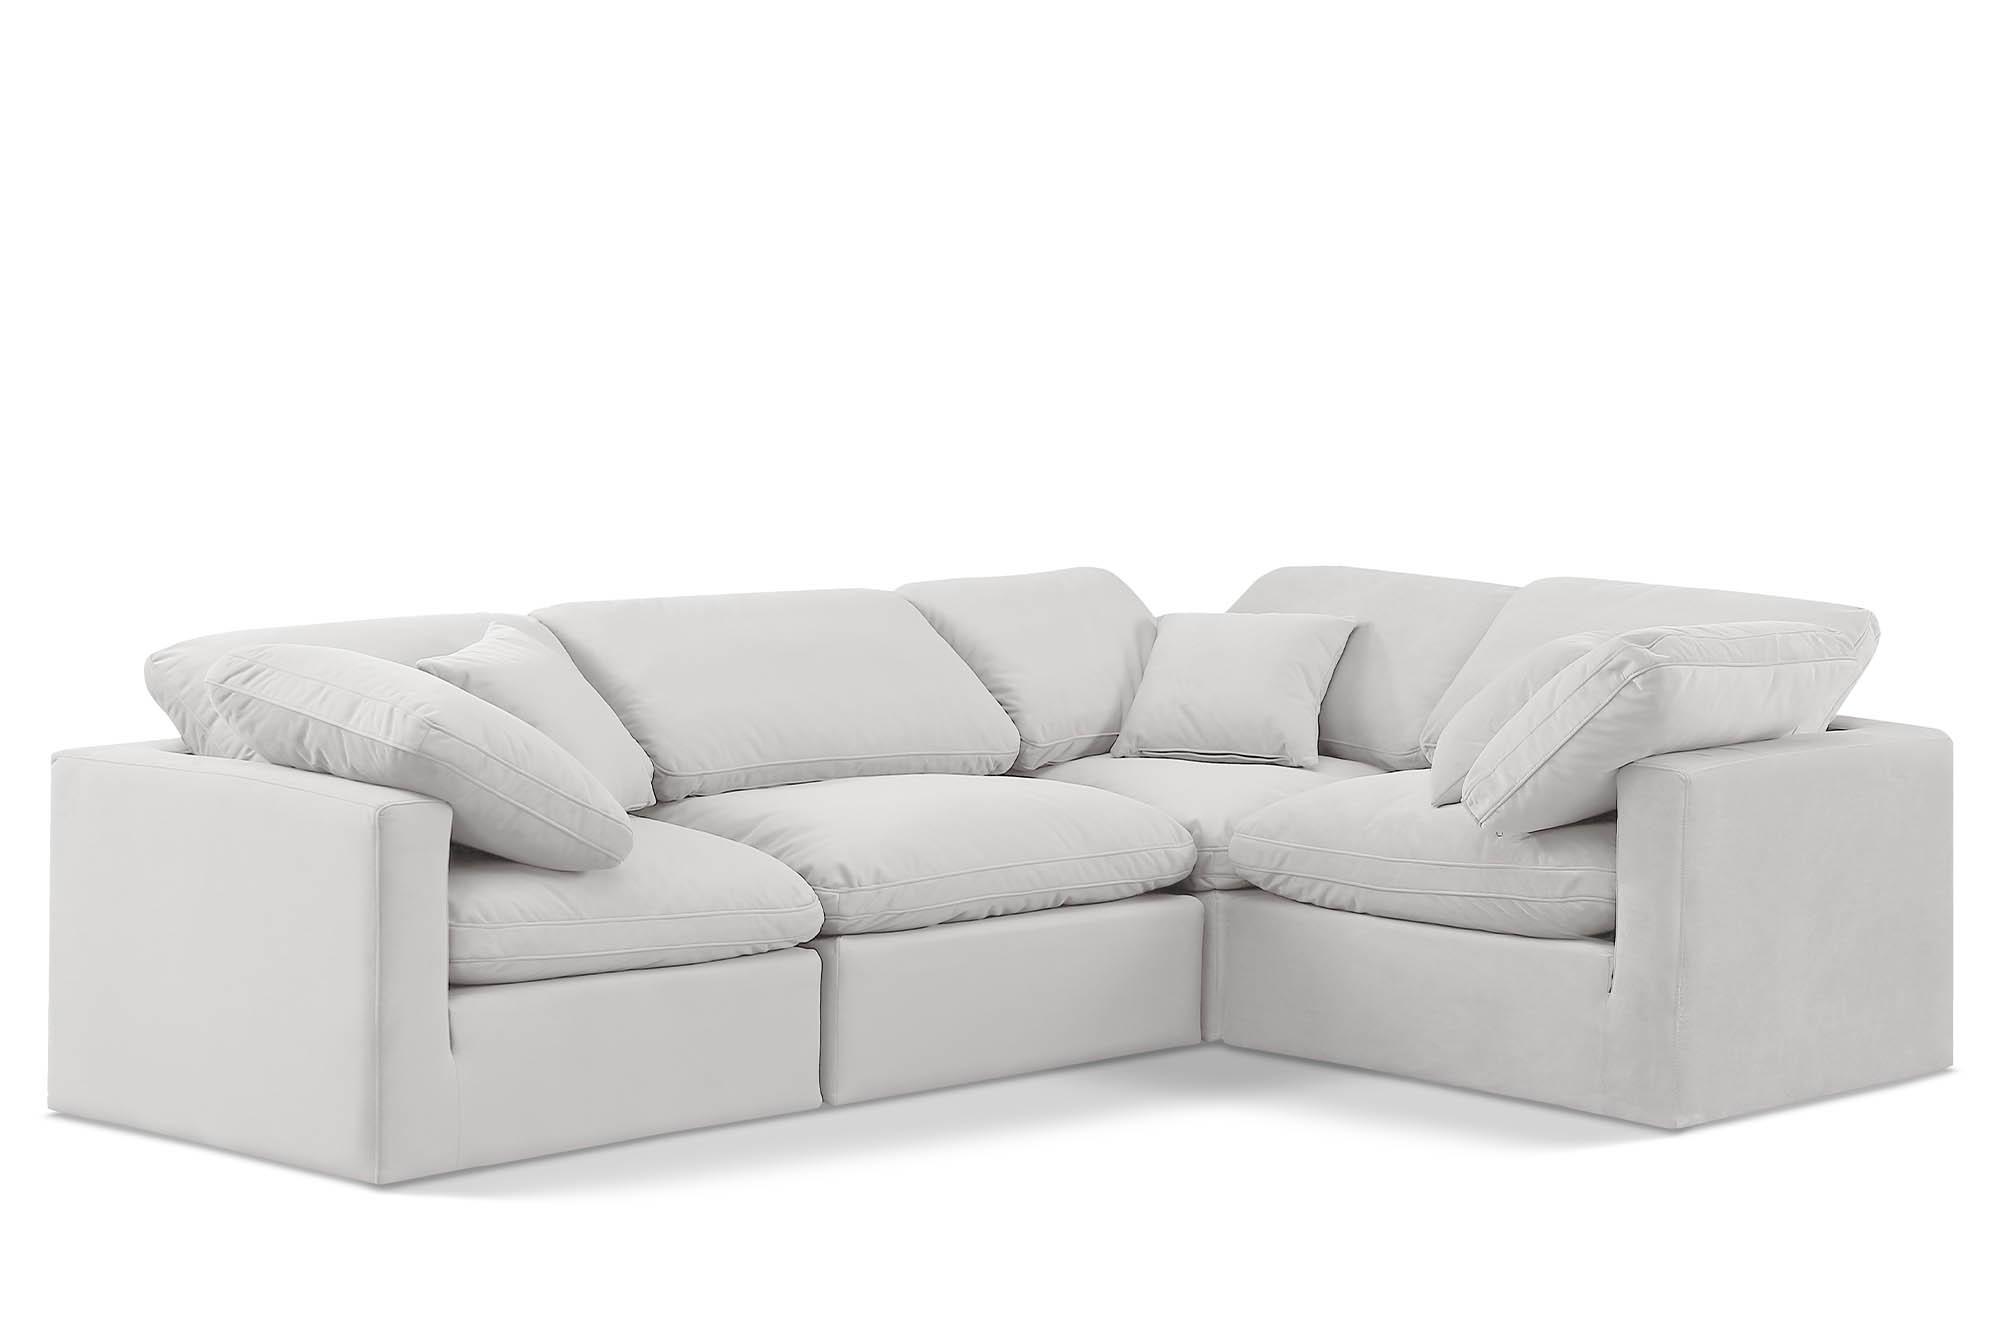 Contemporary, Modern Modular Sectional Sofa INDULGE 147Cream-Sec4C 147Cream-Sec4C in Cream Velvet